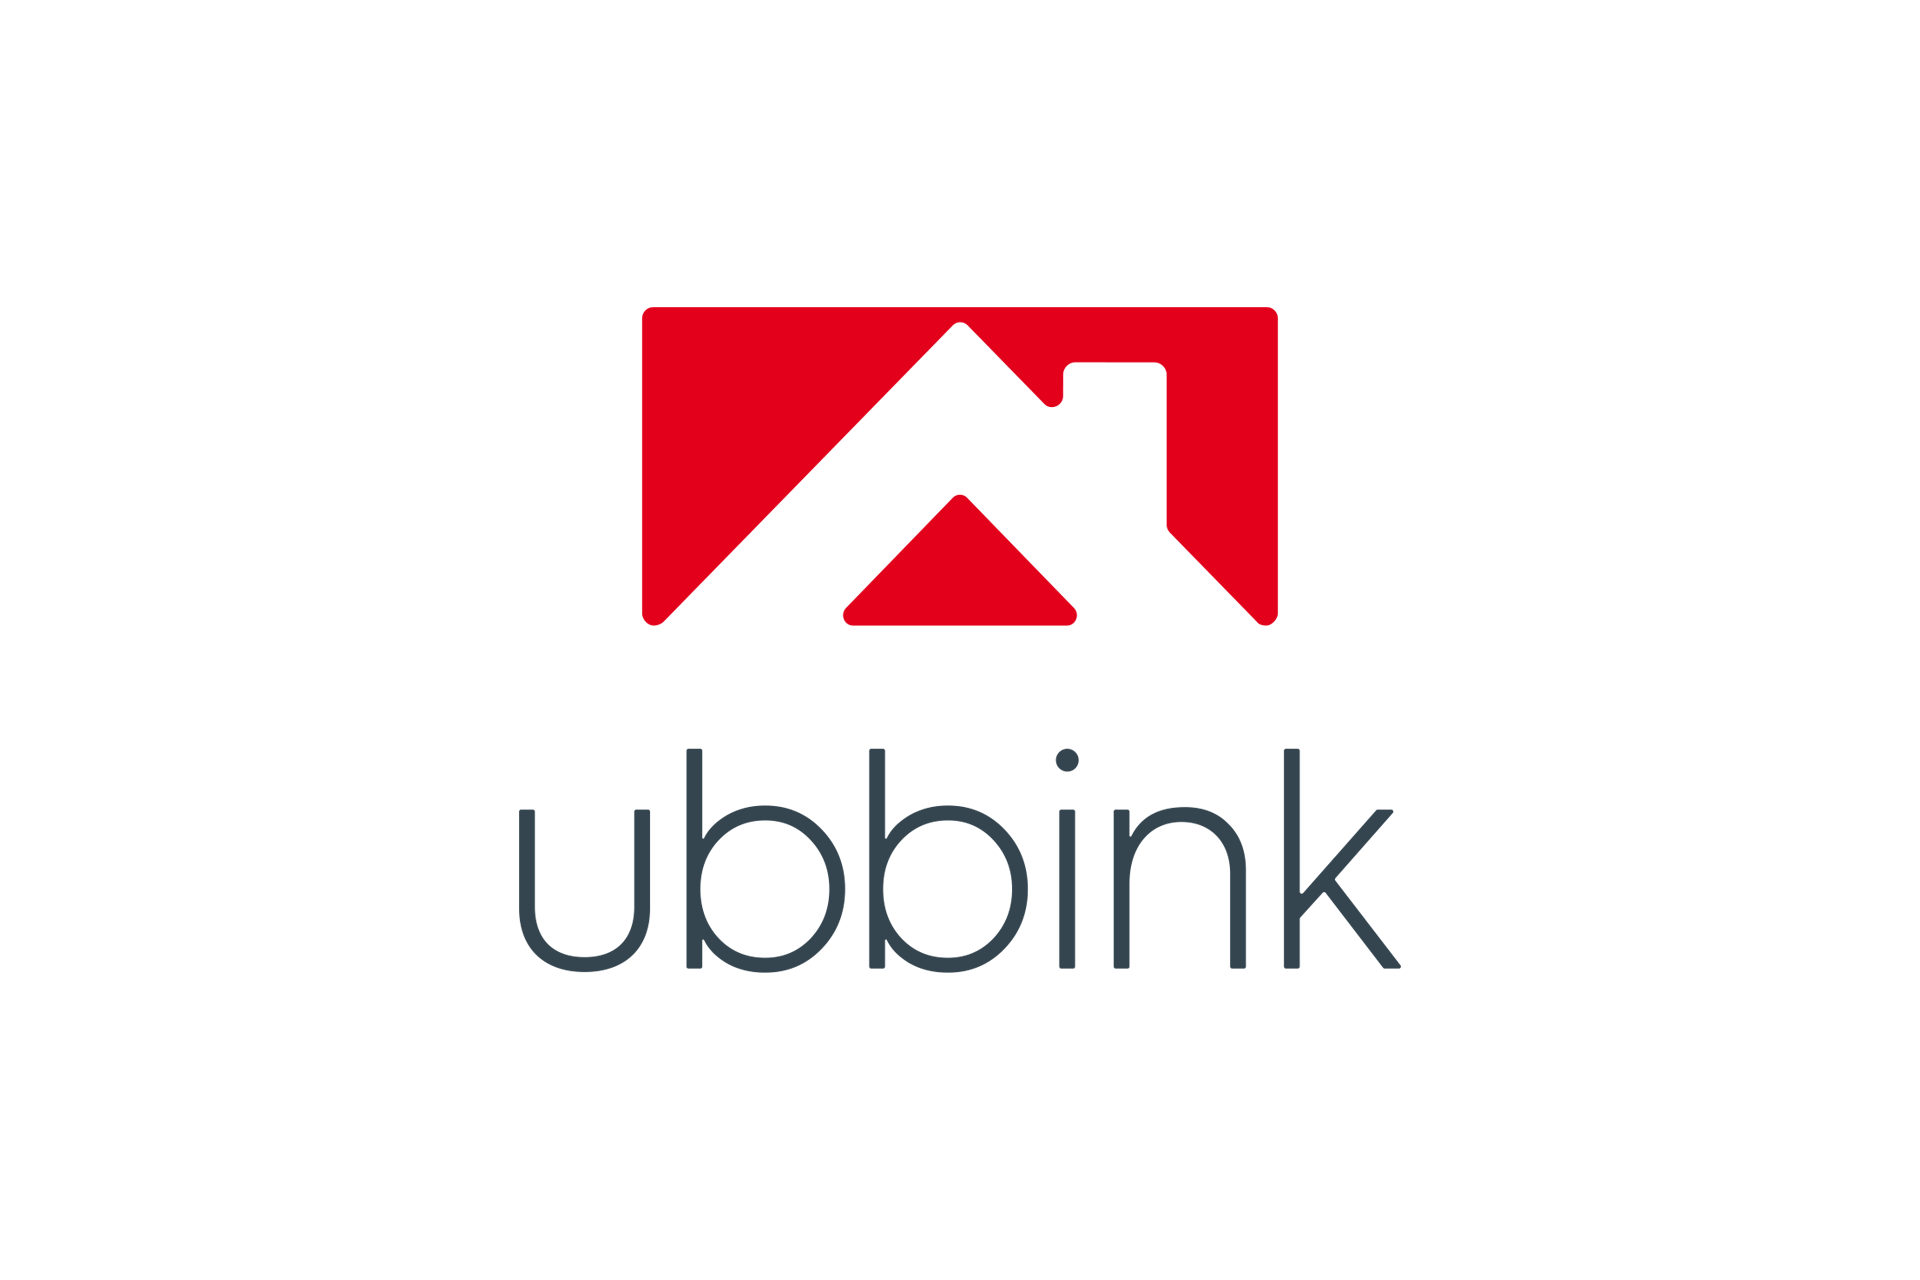 ubbink-logo